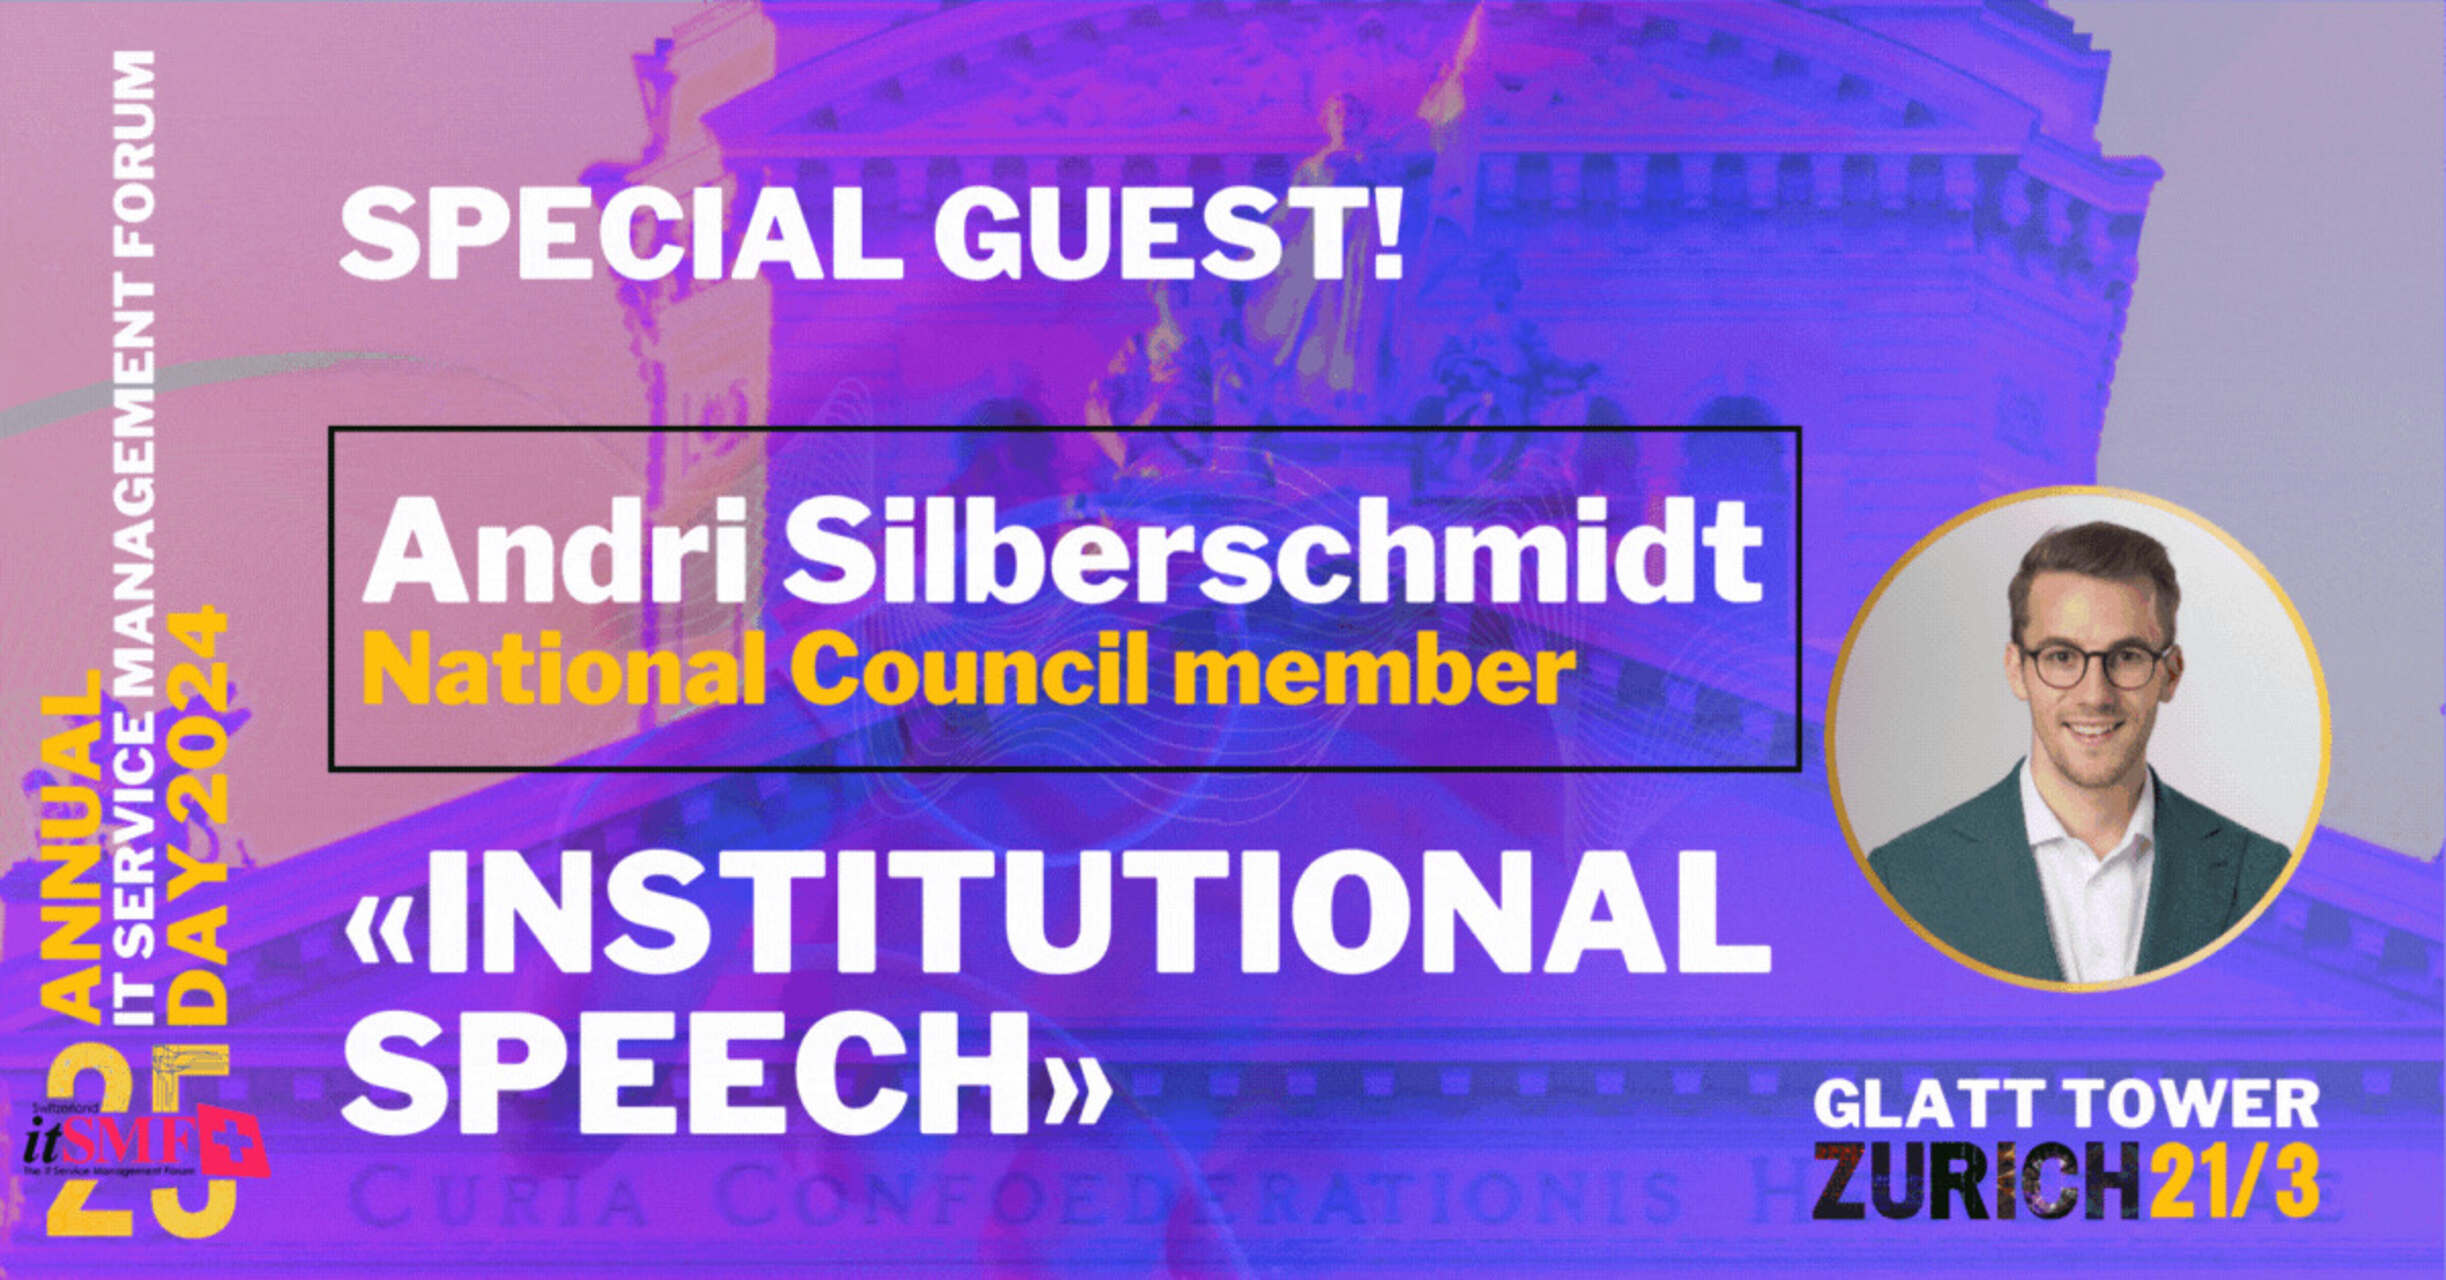 Zarządzanie usługami: Andri Silberschmidt, przedsiębiorca i członek Szwajcarskiej Rady Narodowej, wygłosi przemówienie instytucjonalne podczas corocznego wydarzenia itSMF w Zurychu-Wallisellen w dniu 21 marca 2024 r.